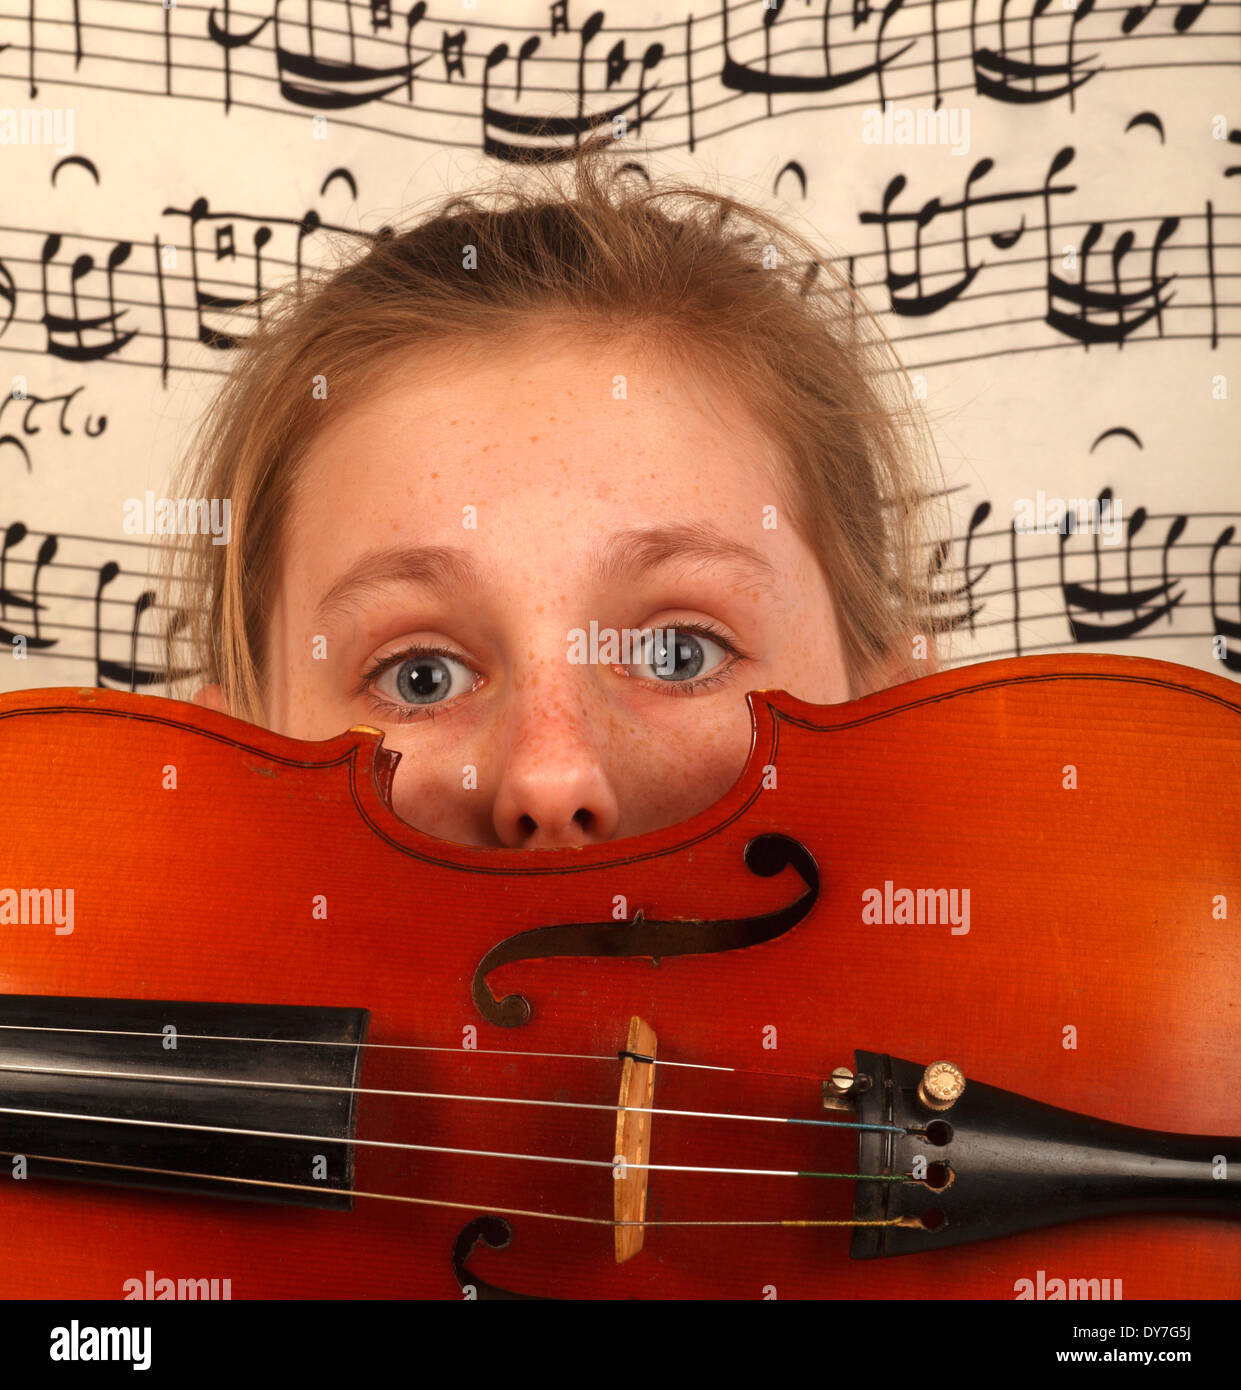 Musica per bambini immagini e fotografie stock ad alta risoluzione - Alamy